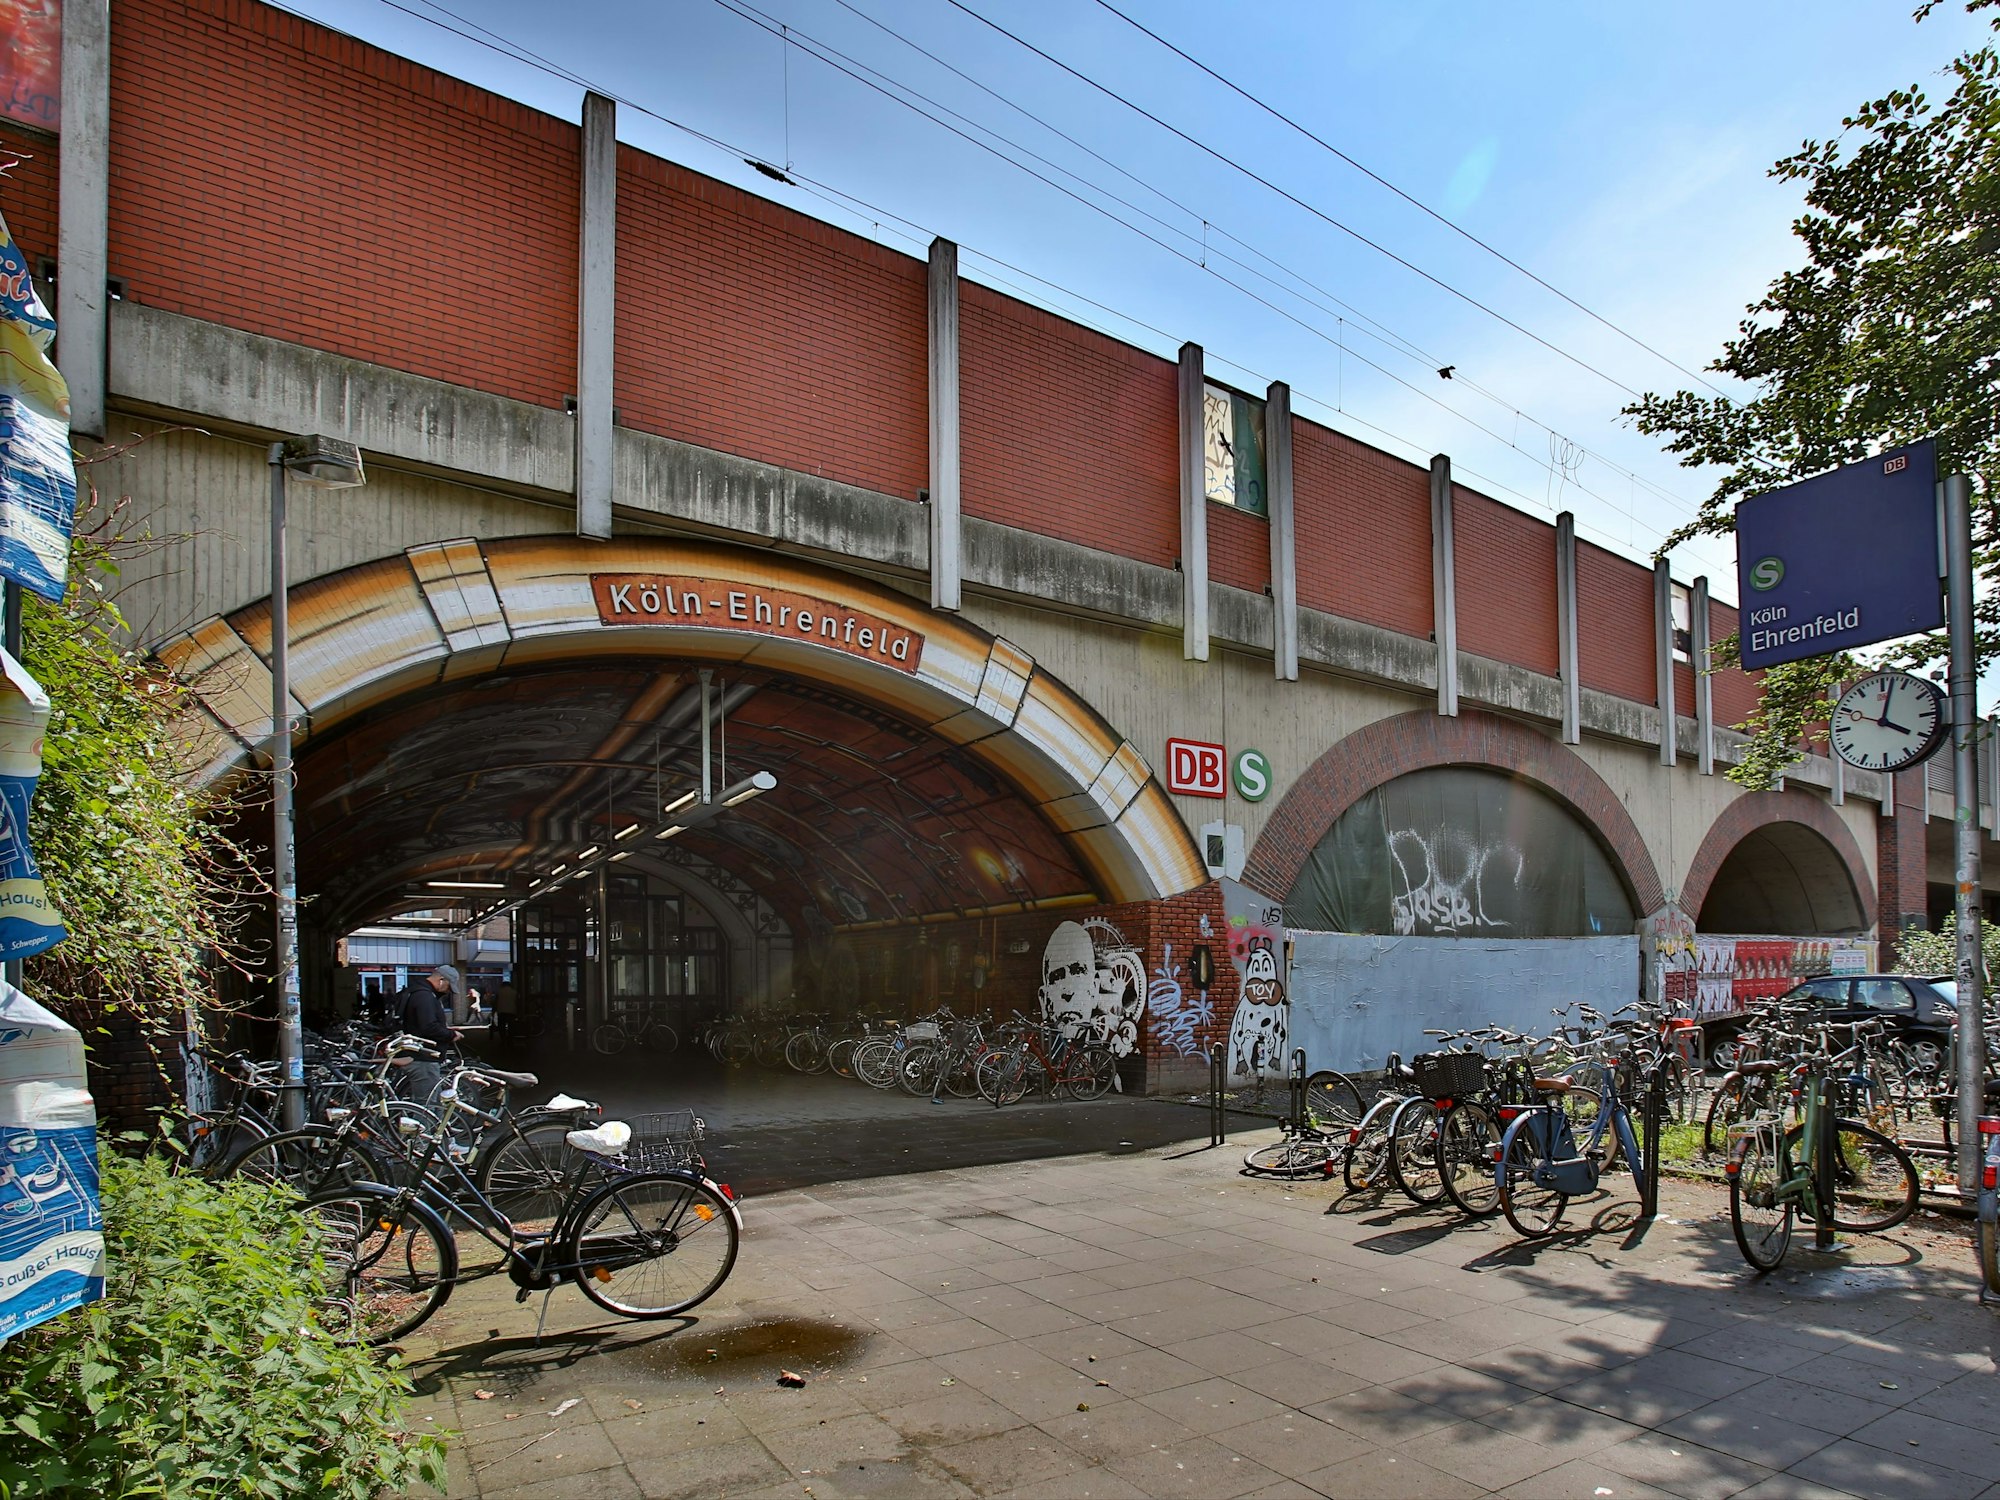 Bahnhof in Köln-Ehrenfeld.